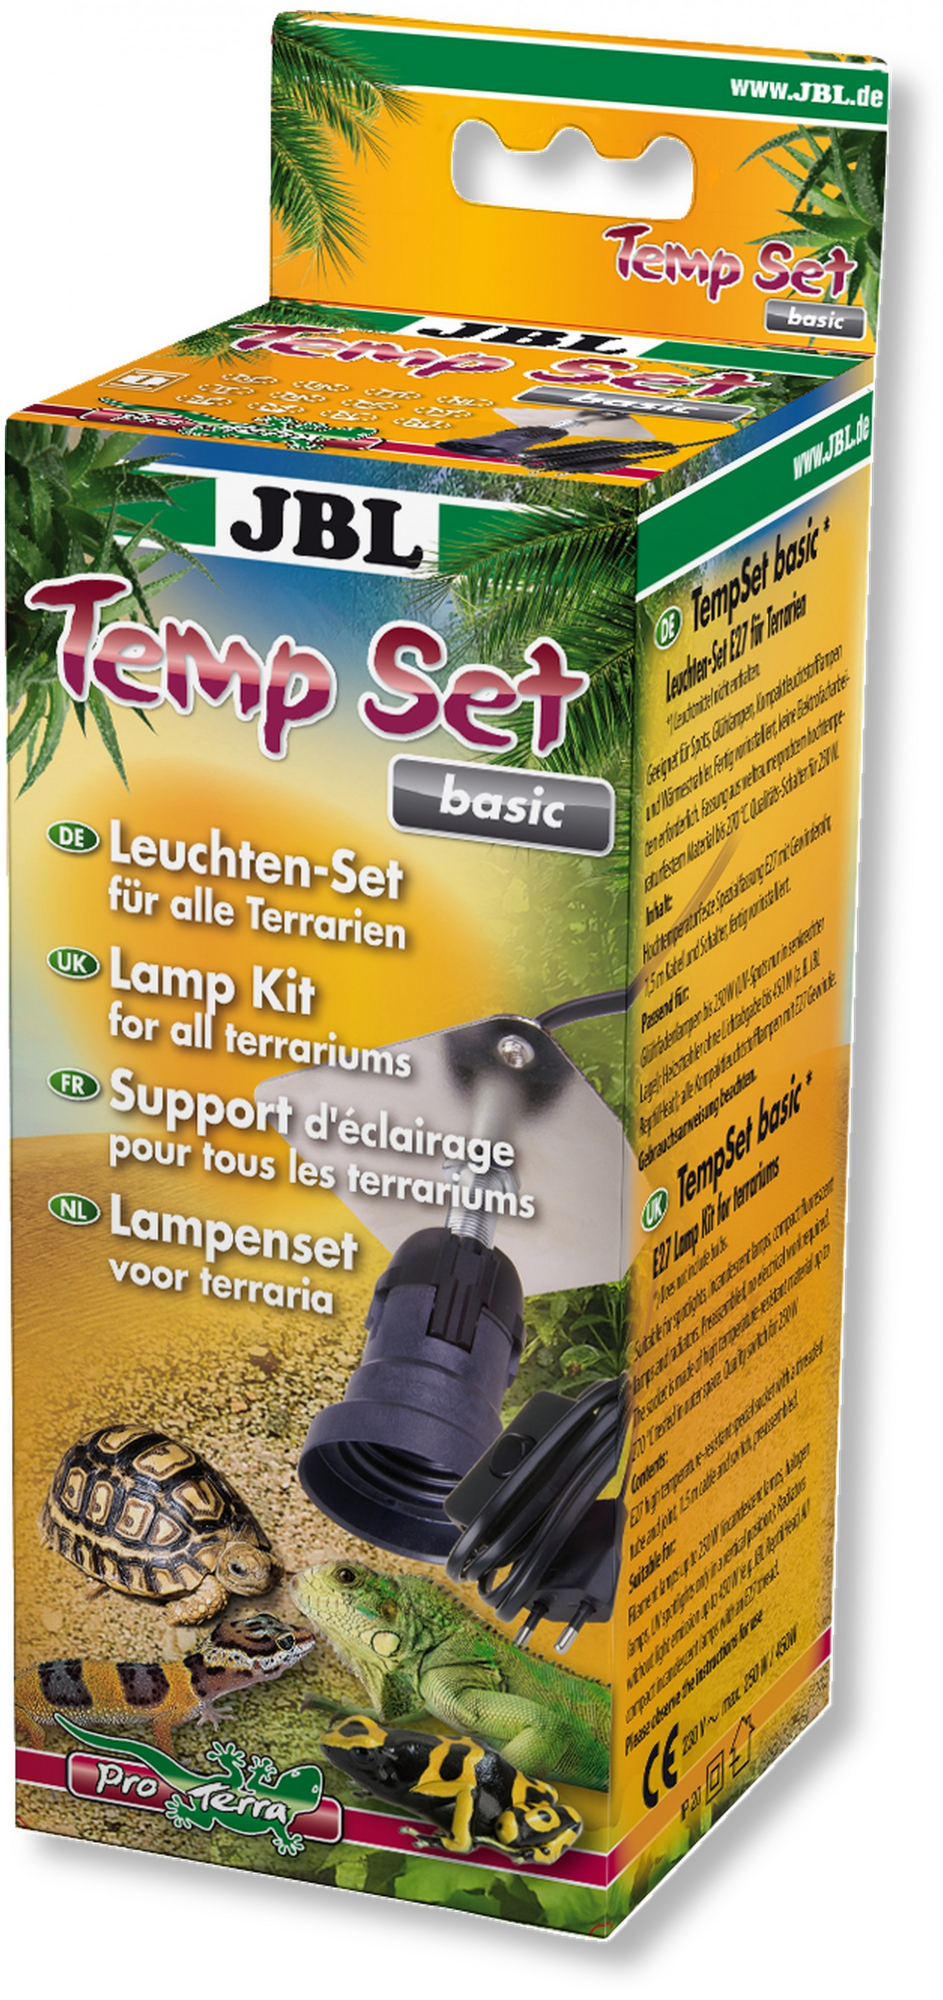 Suporte de luz para terrários JBL TempSet - vários modelos disponíveis